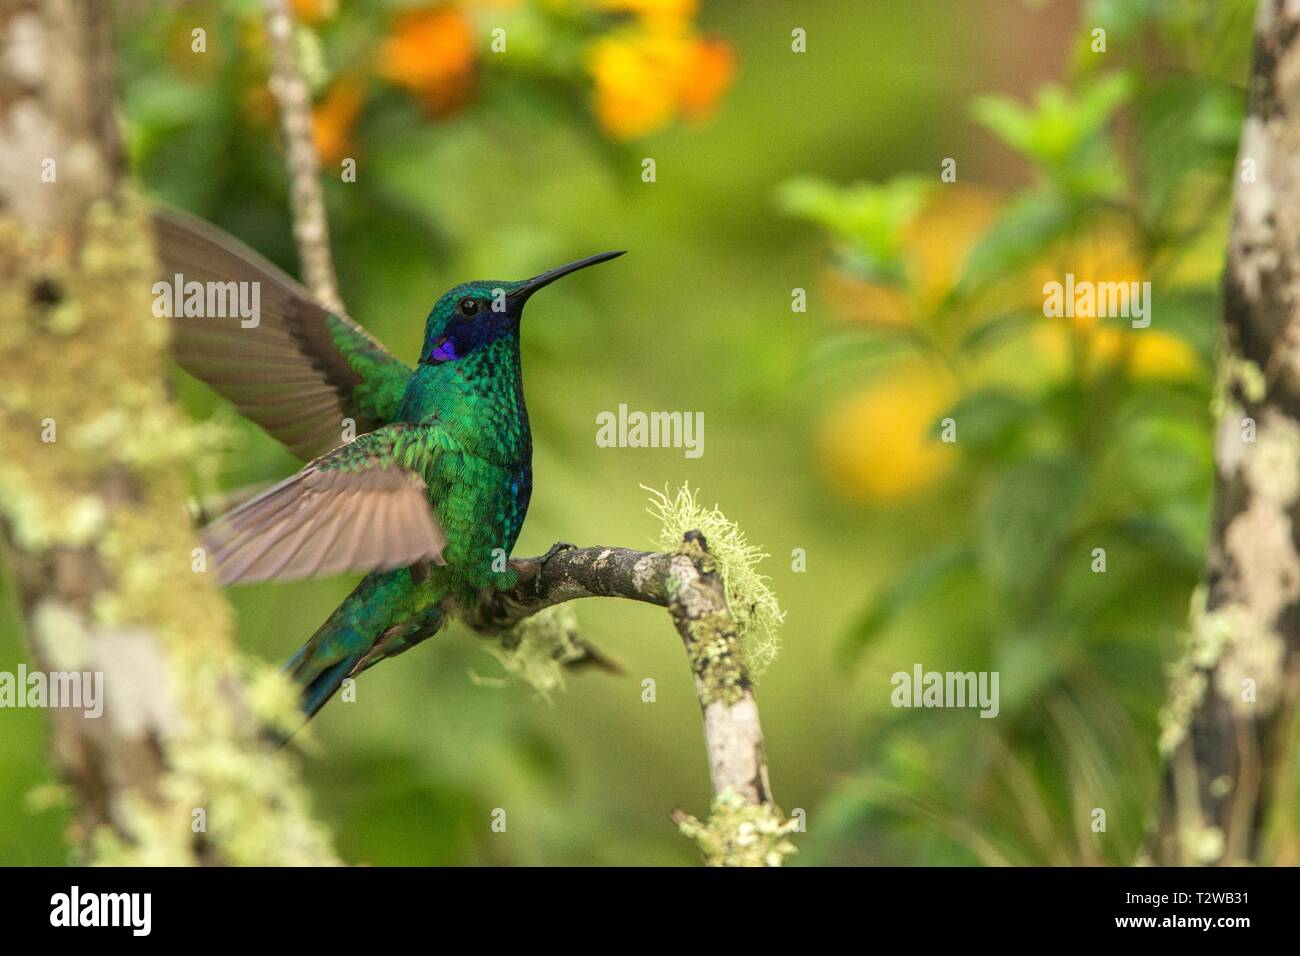 Green violet-ear assis sur une branche, hummingbird de la forêt tropicale, l'Equateur, bird perching,petit oiseau aux ailes étendues,fond de couleur claire Banque D'Images